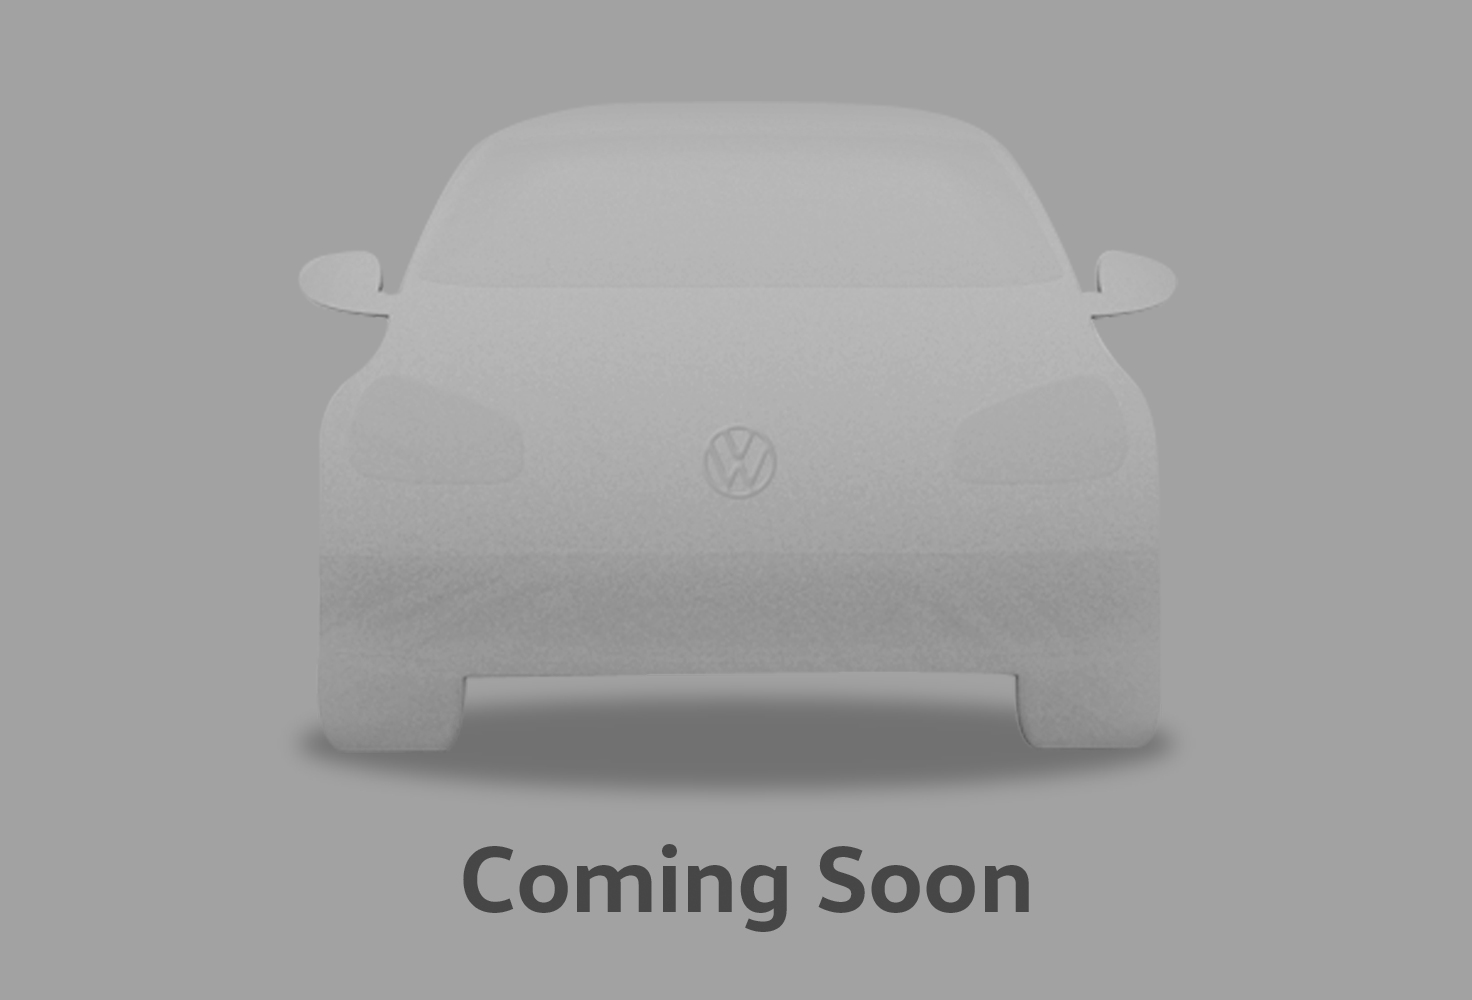 Volkswagen Golf Hatchback GTI Clubsport 2.0 TSI 300PS 7-speed DSG 5 Door